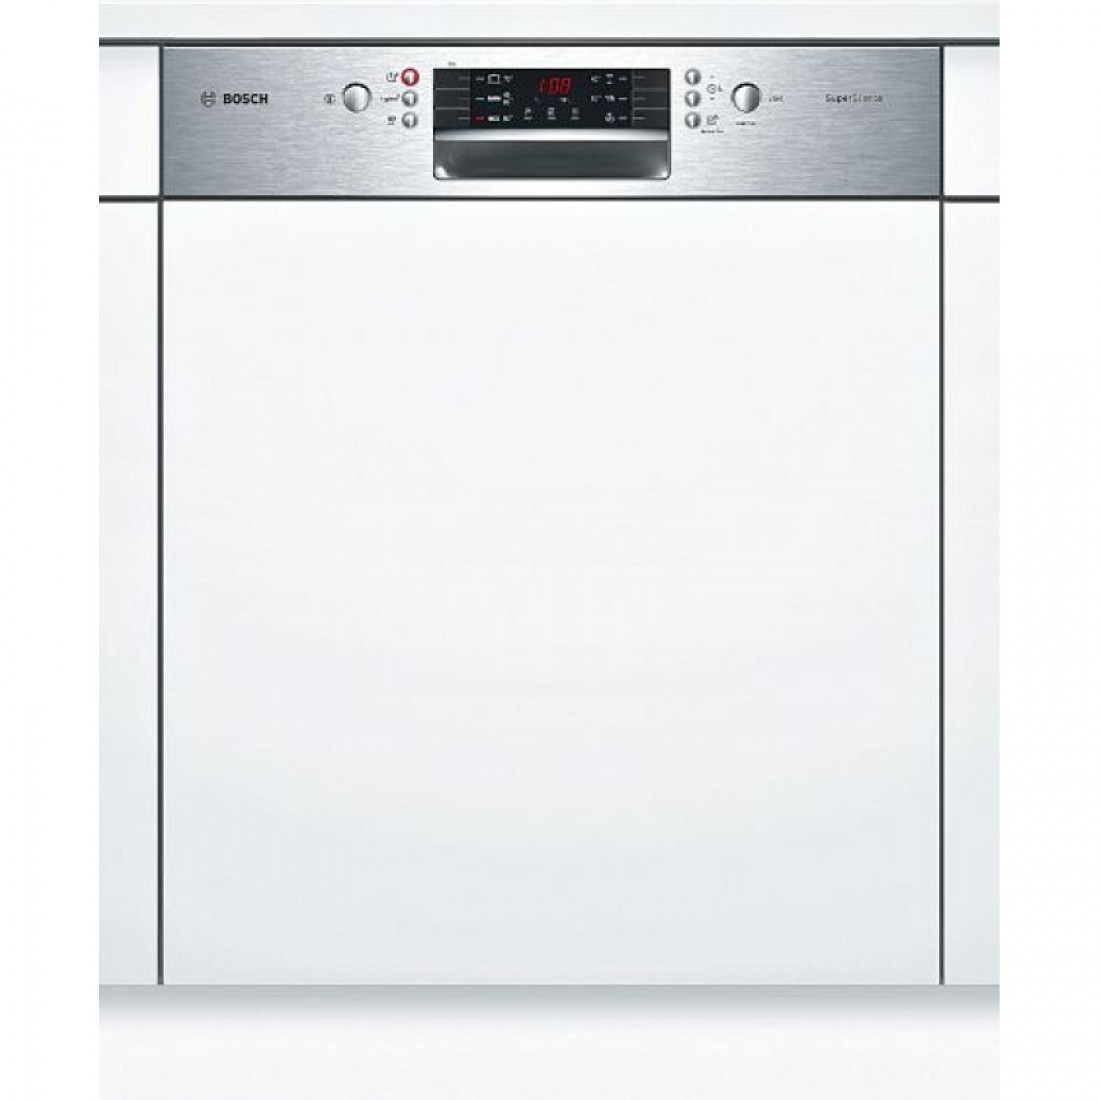 Купить посудомоечную машину 60 см встраиваемая bosch. Посудомоечная машина Siemens SN 536s01 ke. Посудомоечная машина Bosch SMI 40m65. Bosch SMI 46ks00 t. Посудомоечная машина Bosch SMI 46ks01 e.